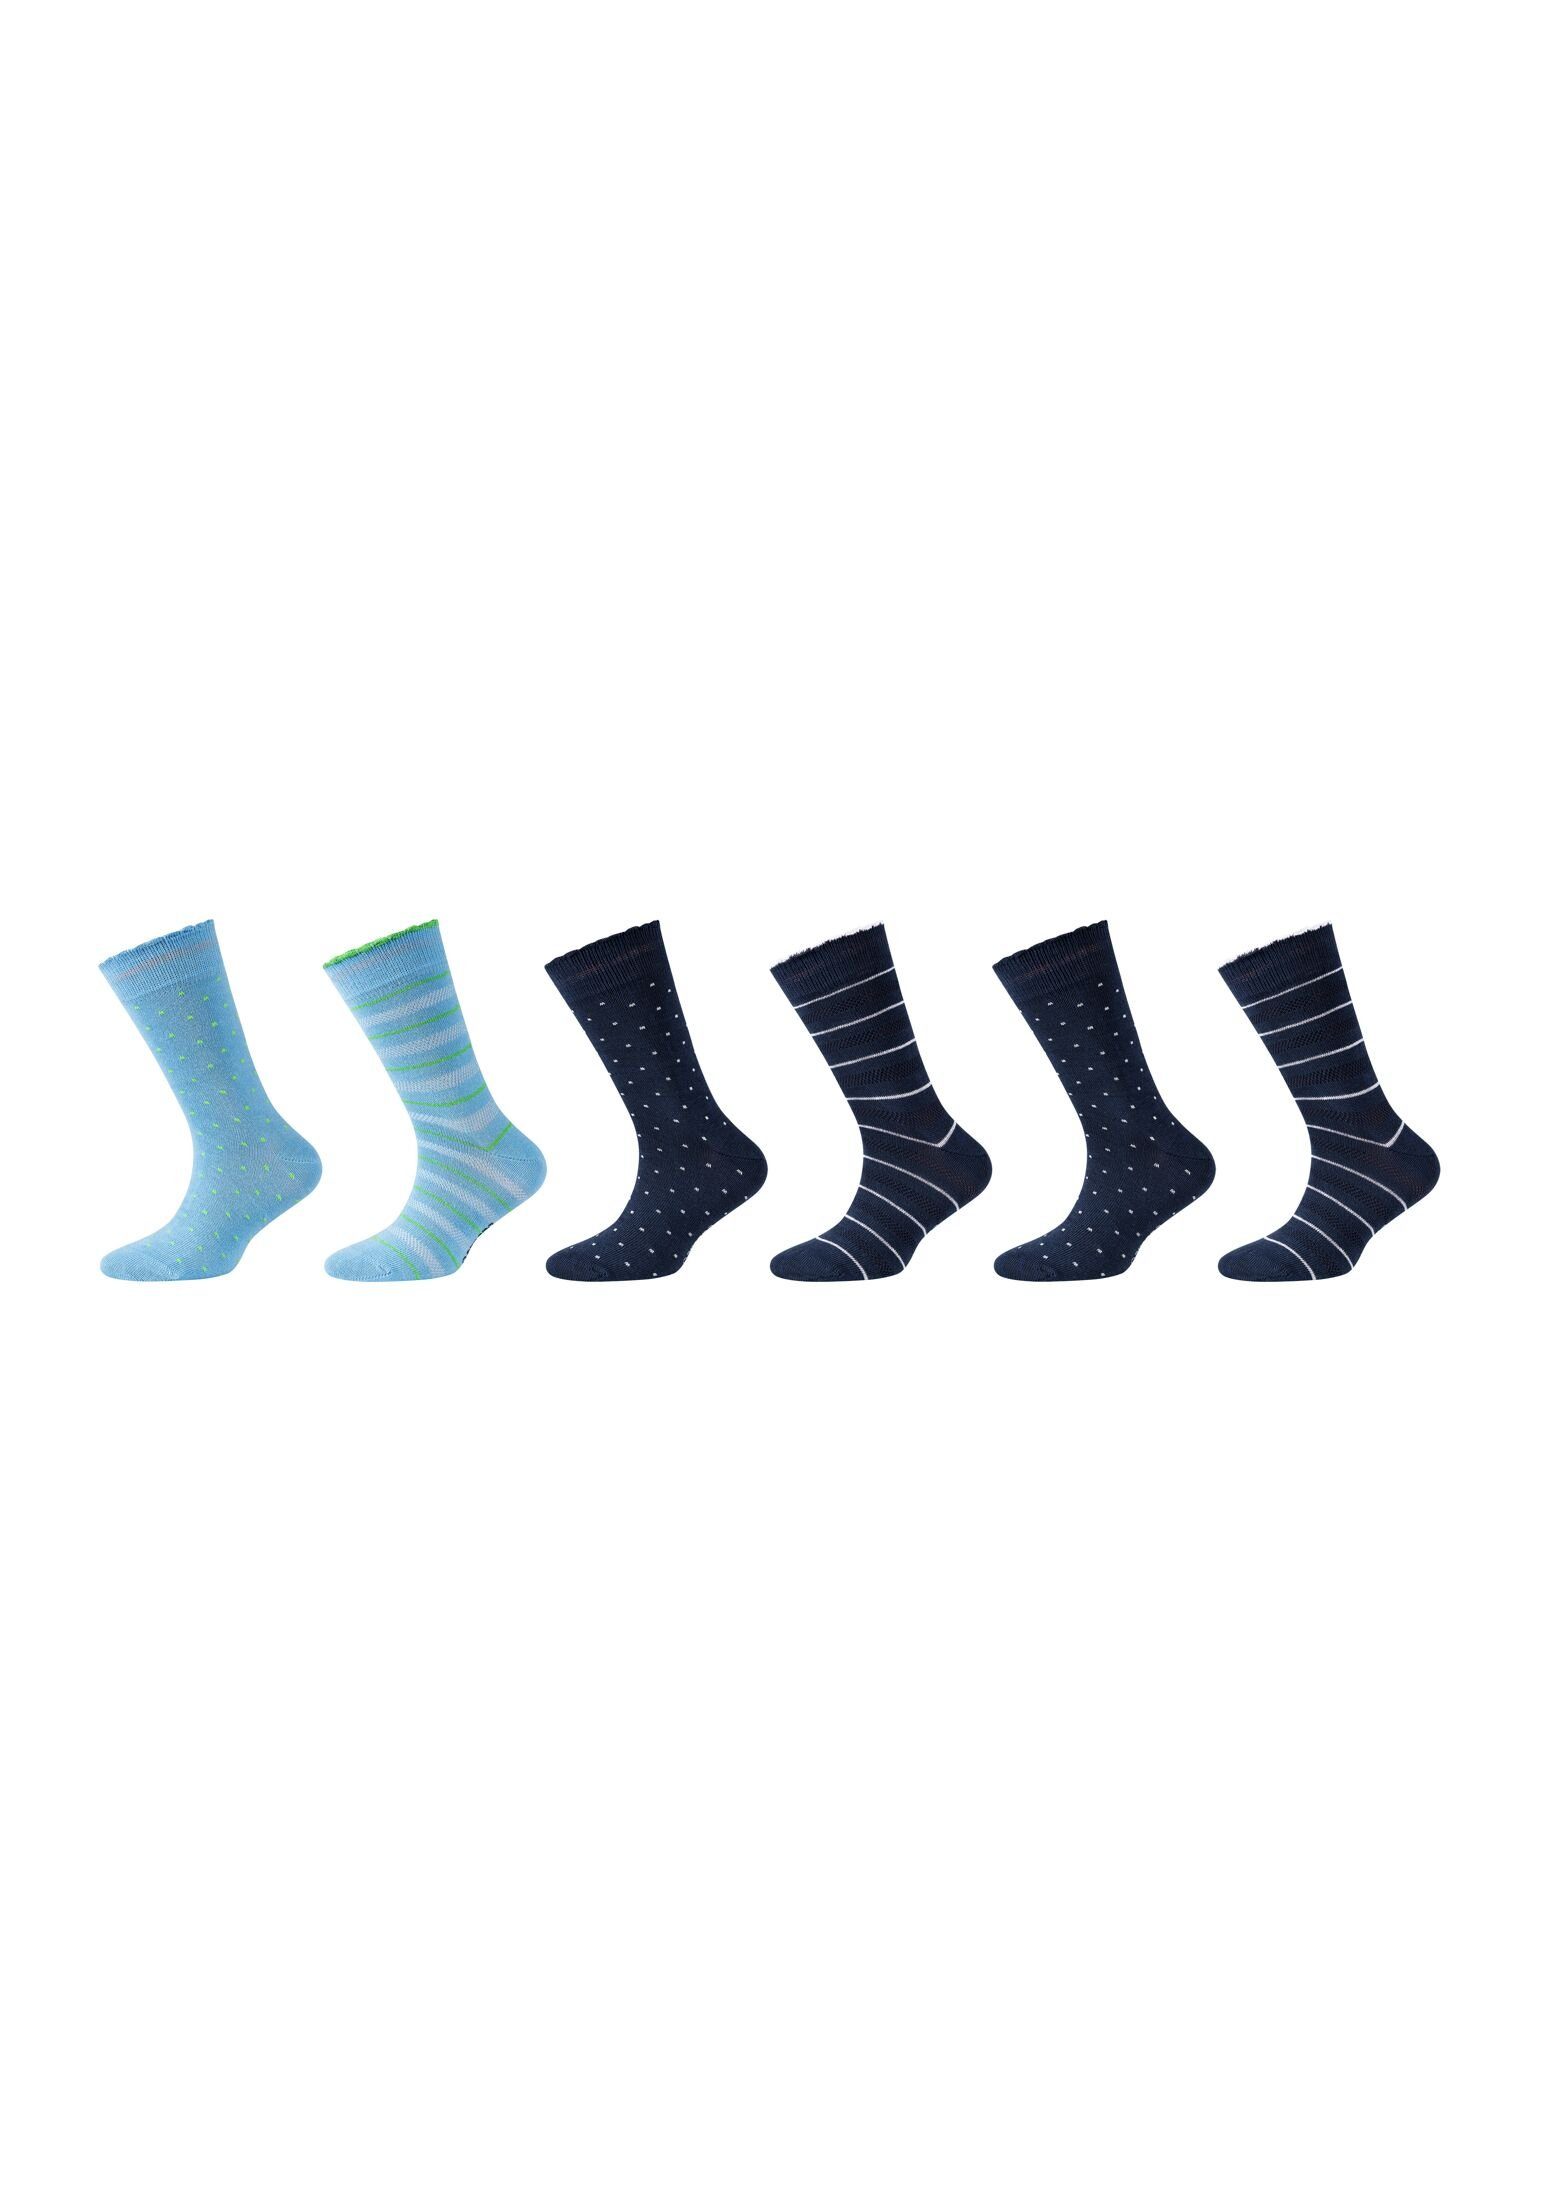 Camano Socken Socken 6er Pack blue